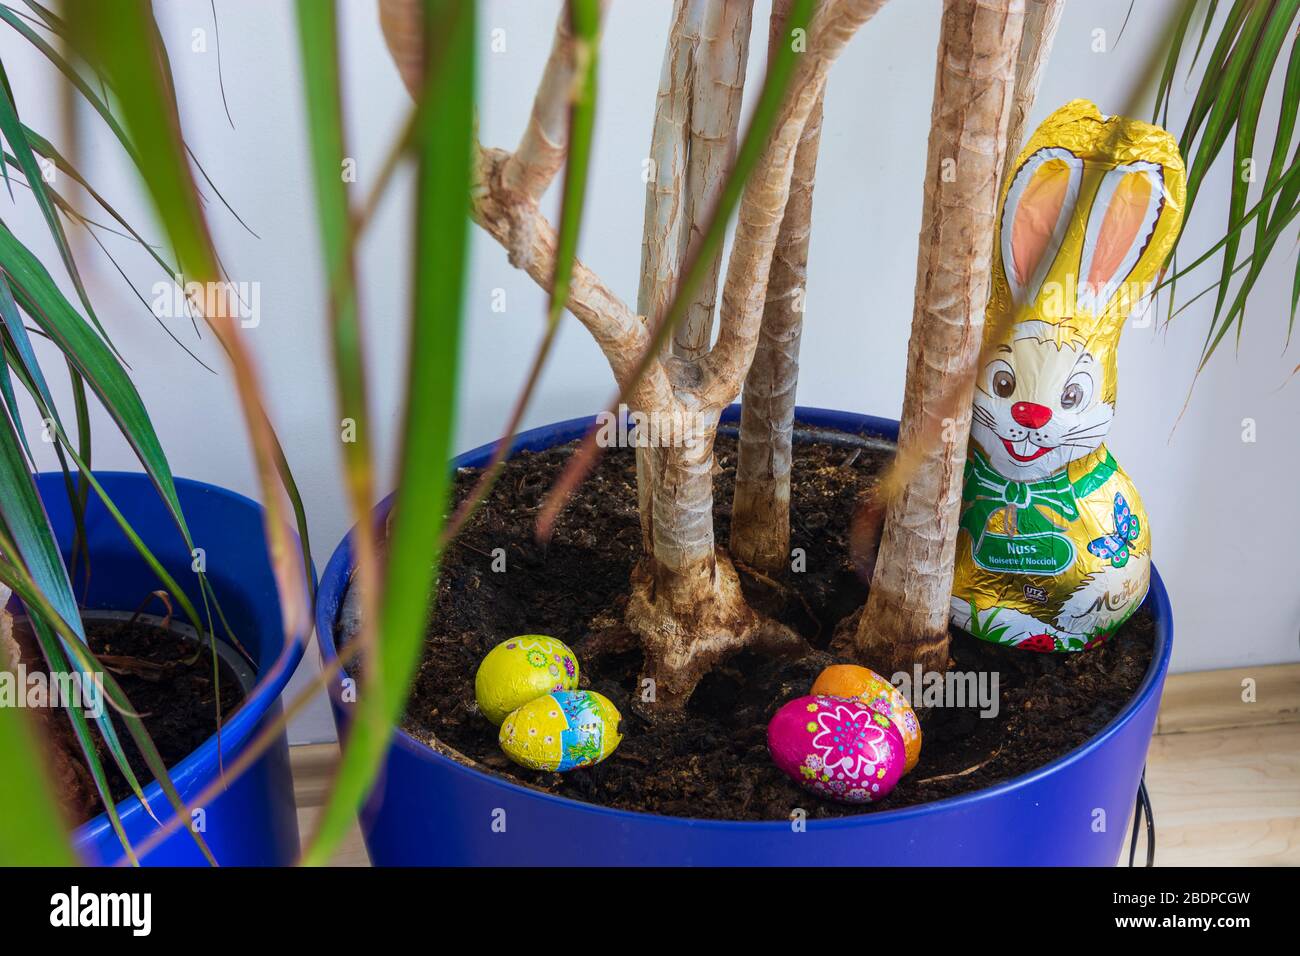 Ostereiersuche, Osterhase en Zeiten von Corona virus - la caza de huevos de Pascua, conejito de Pascua en tiempos de Corona virus, planta en maceta Foto de stock